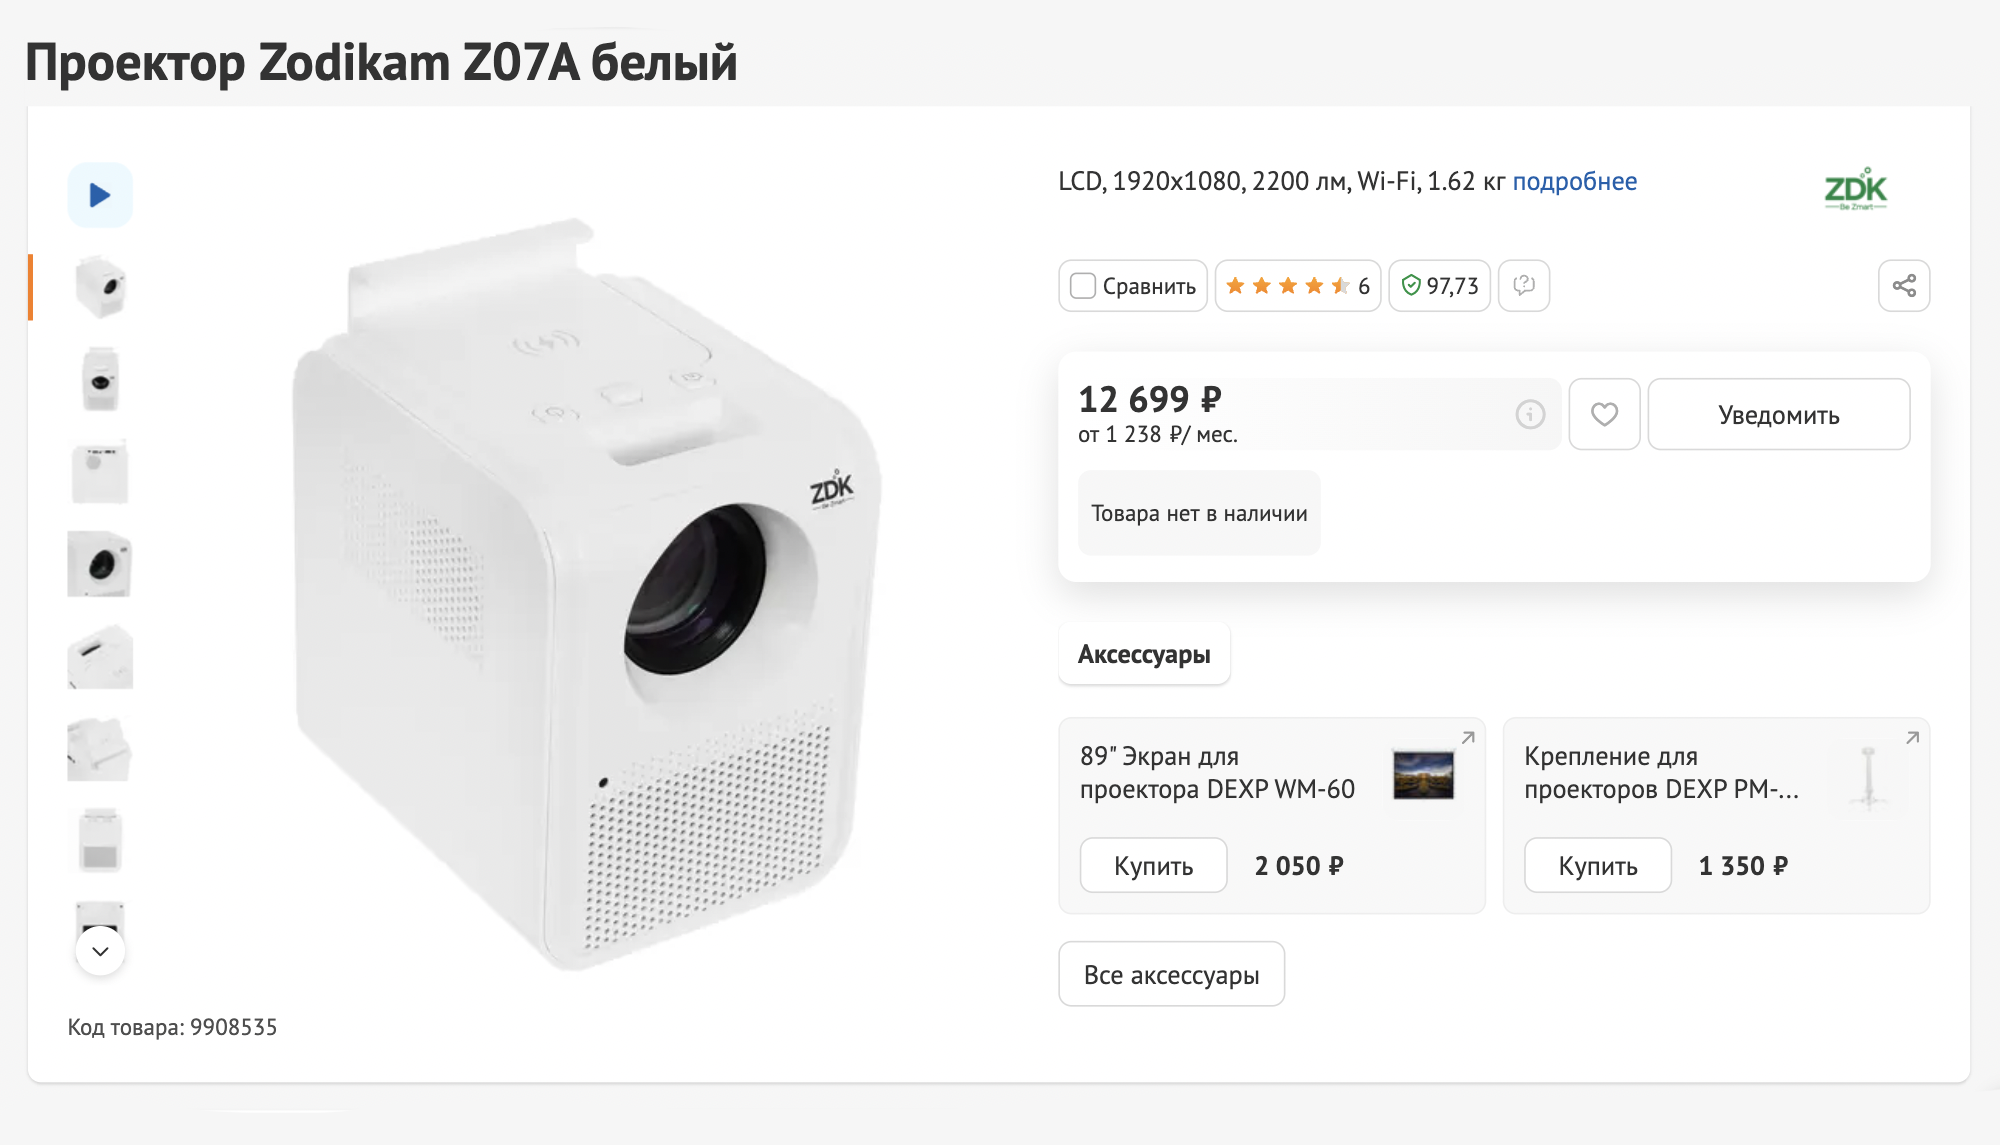 Компактные бюджетные проекторы Zodikam популярны из⁠-⁠за хорошей картинки и компактности. При этом покупатели жалуются на нестабильный Android. Источник: dns-shop.ru